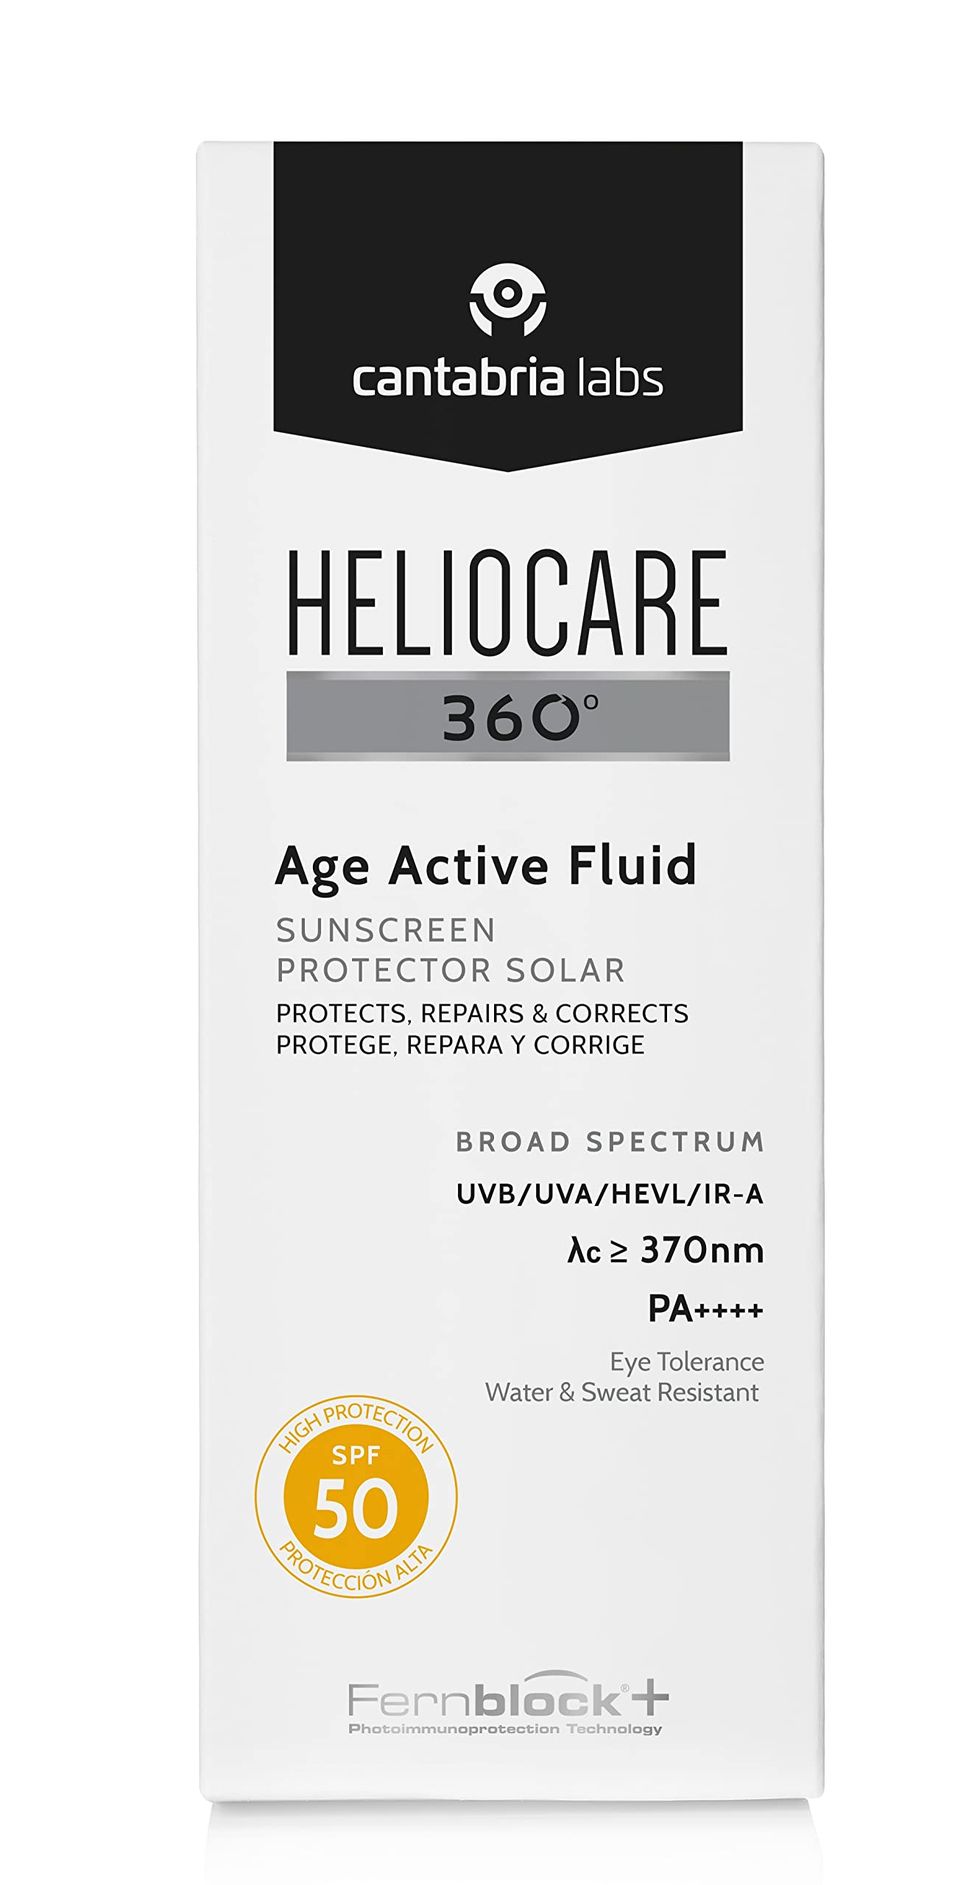 Heliocare 360° Age Active Fluid Spf 50, Crema Solar Facial, Ultraligero, con Triple Complejo Antiedad, Previene el Fotoenvejecimiento, 50Ml, Sin Color